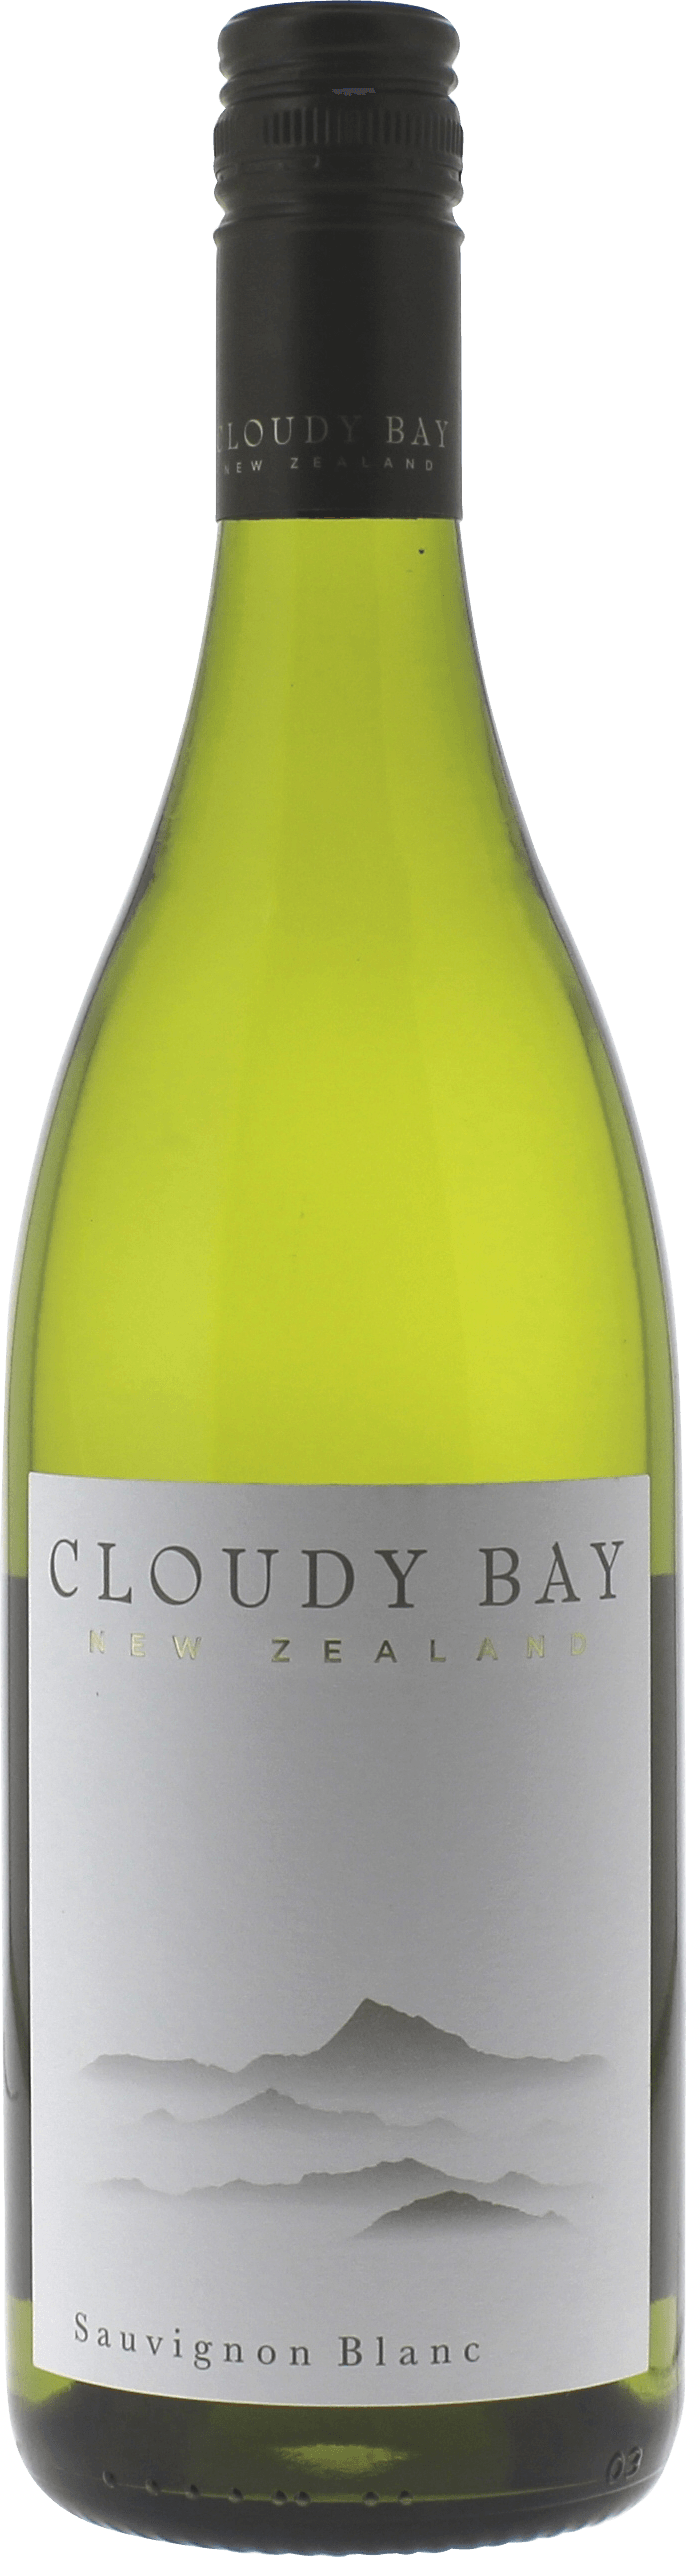 Cloudy bay sauvignon blanc marlborough 2018  , Nouvelle Zelande